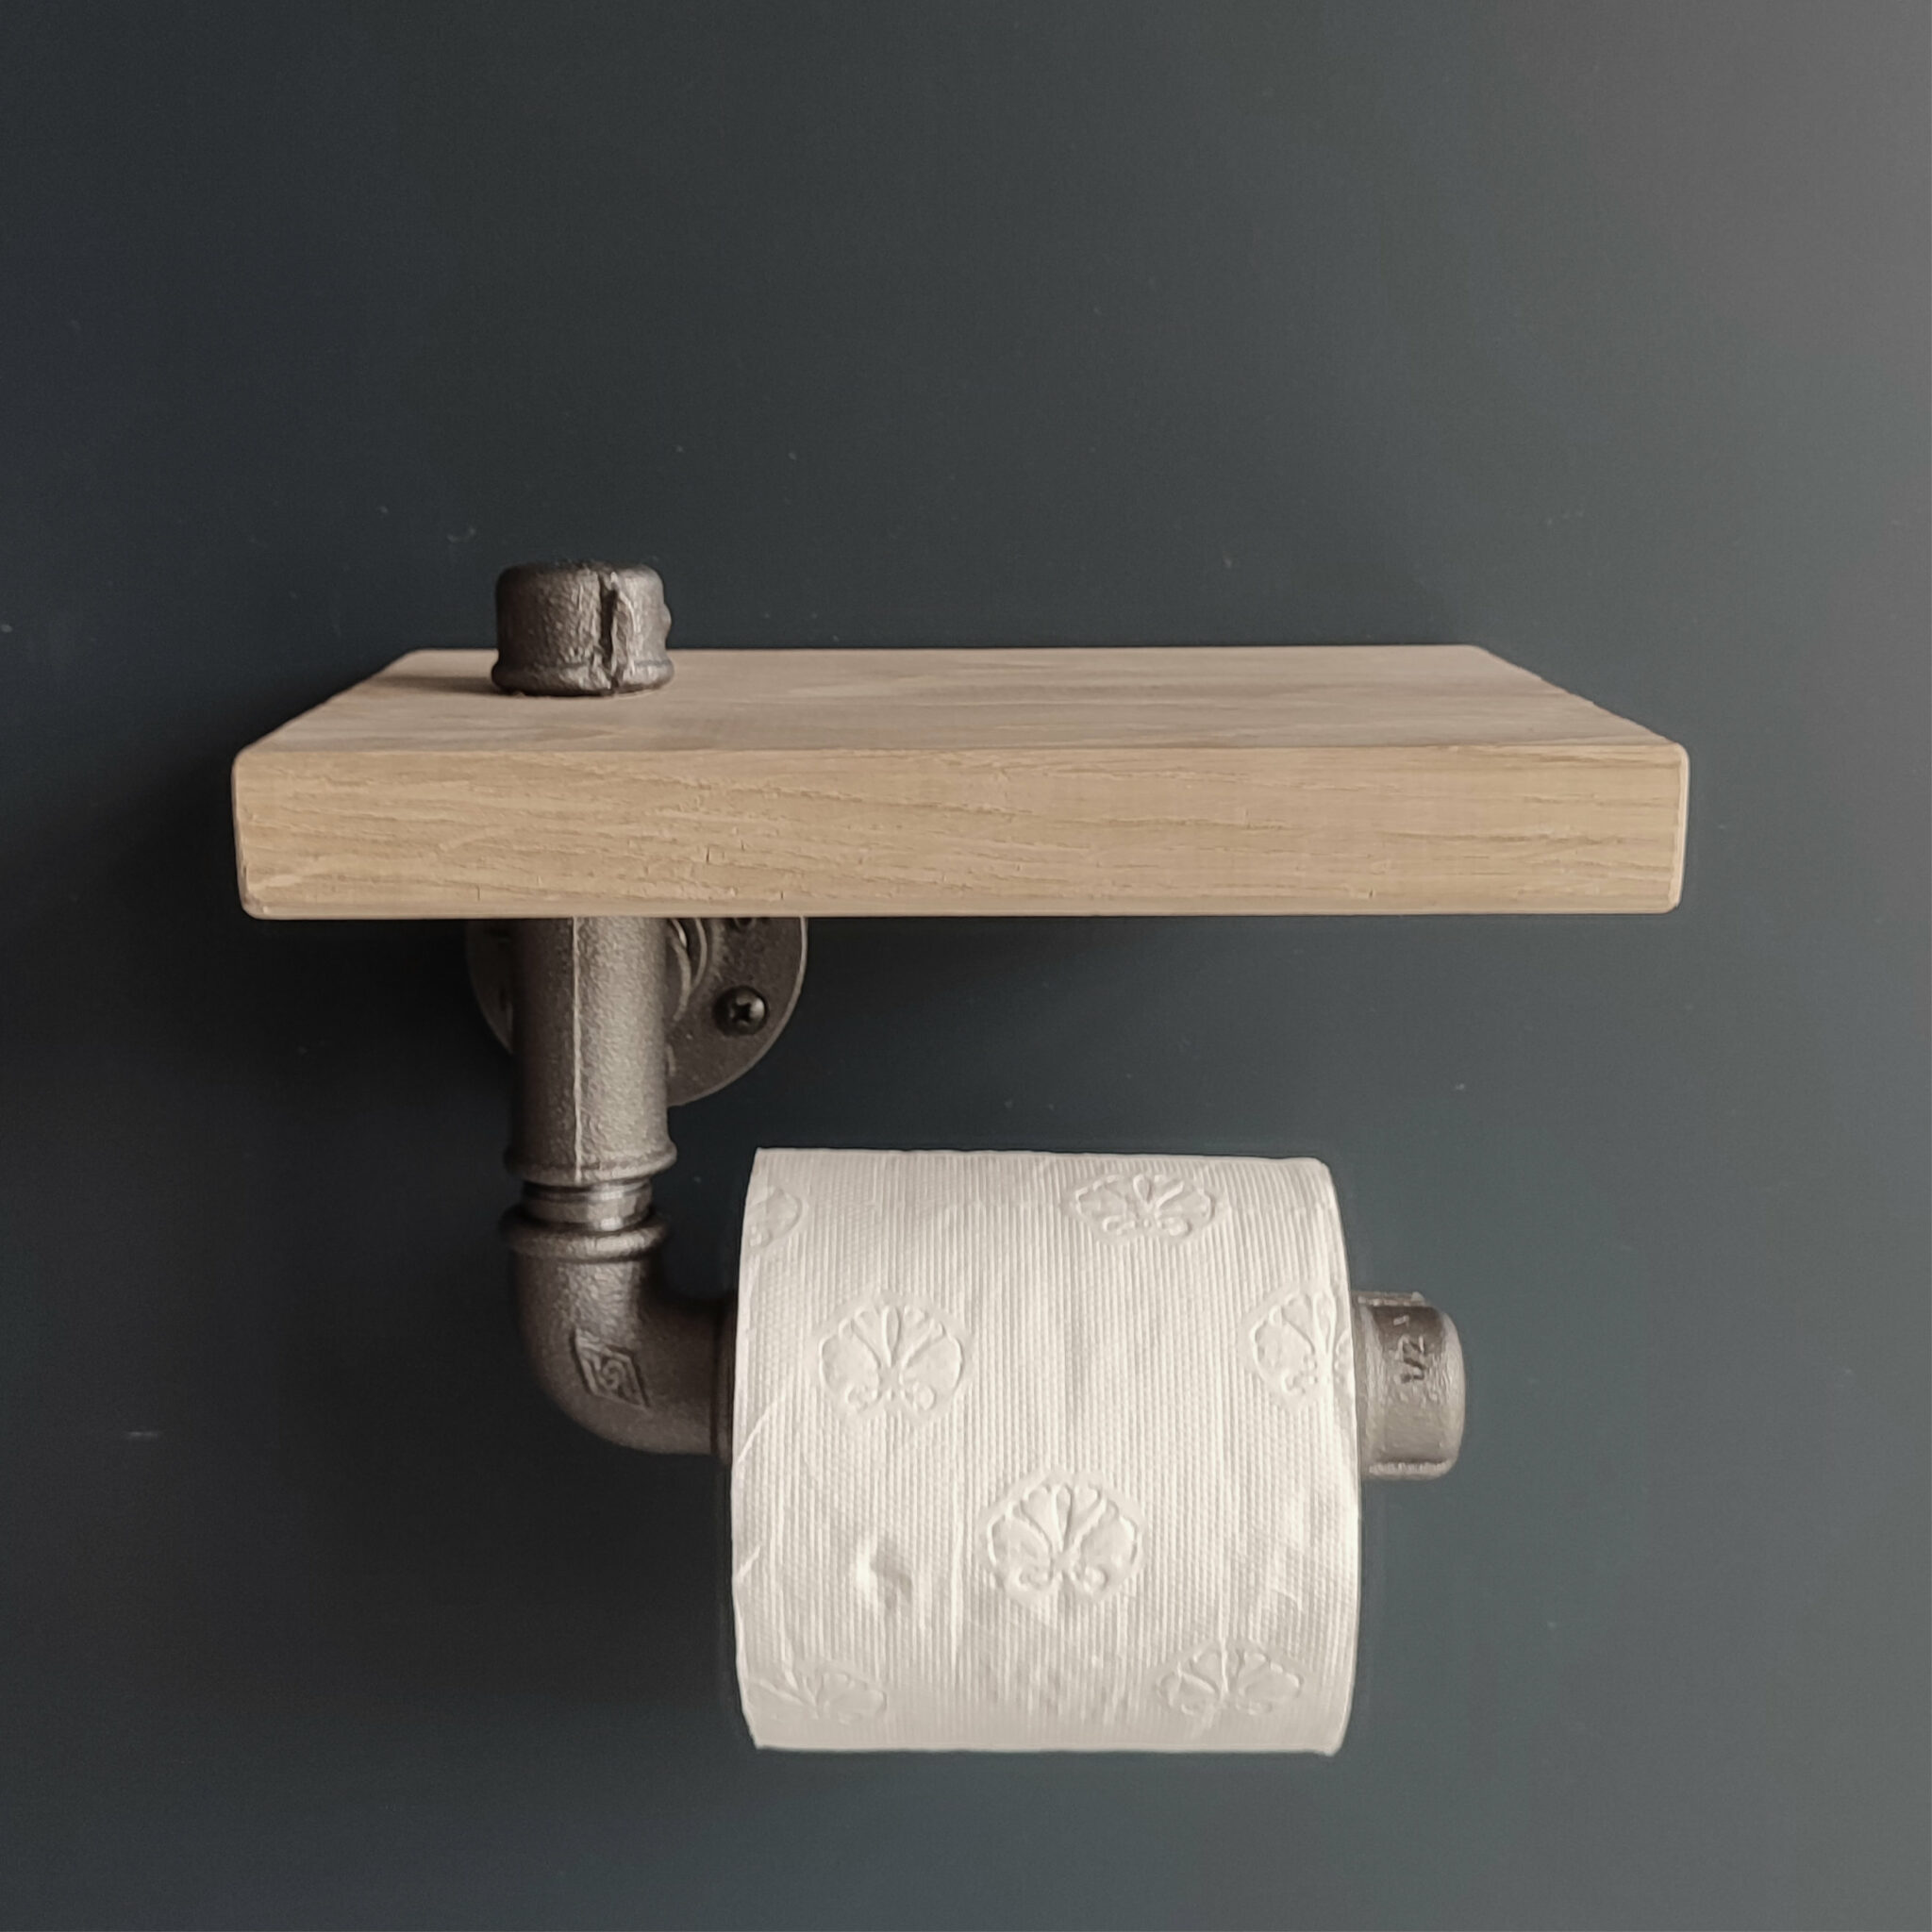 Straight Toilet Paper Holder